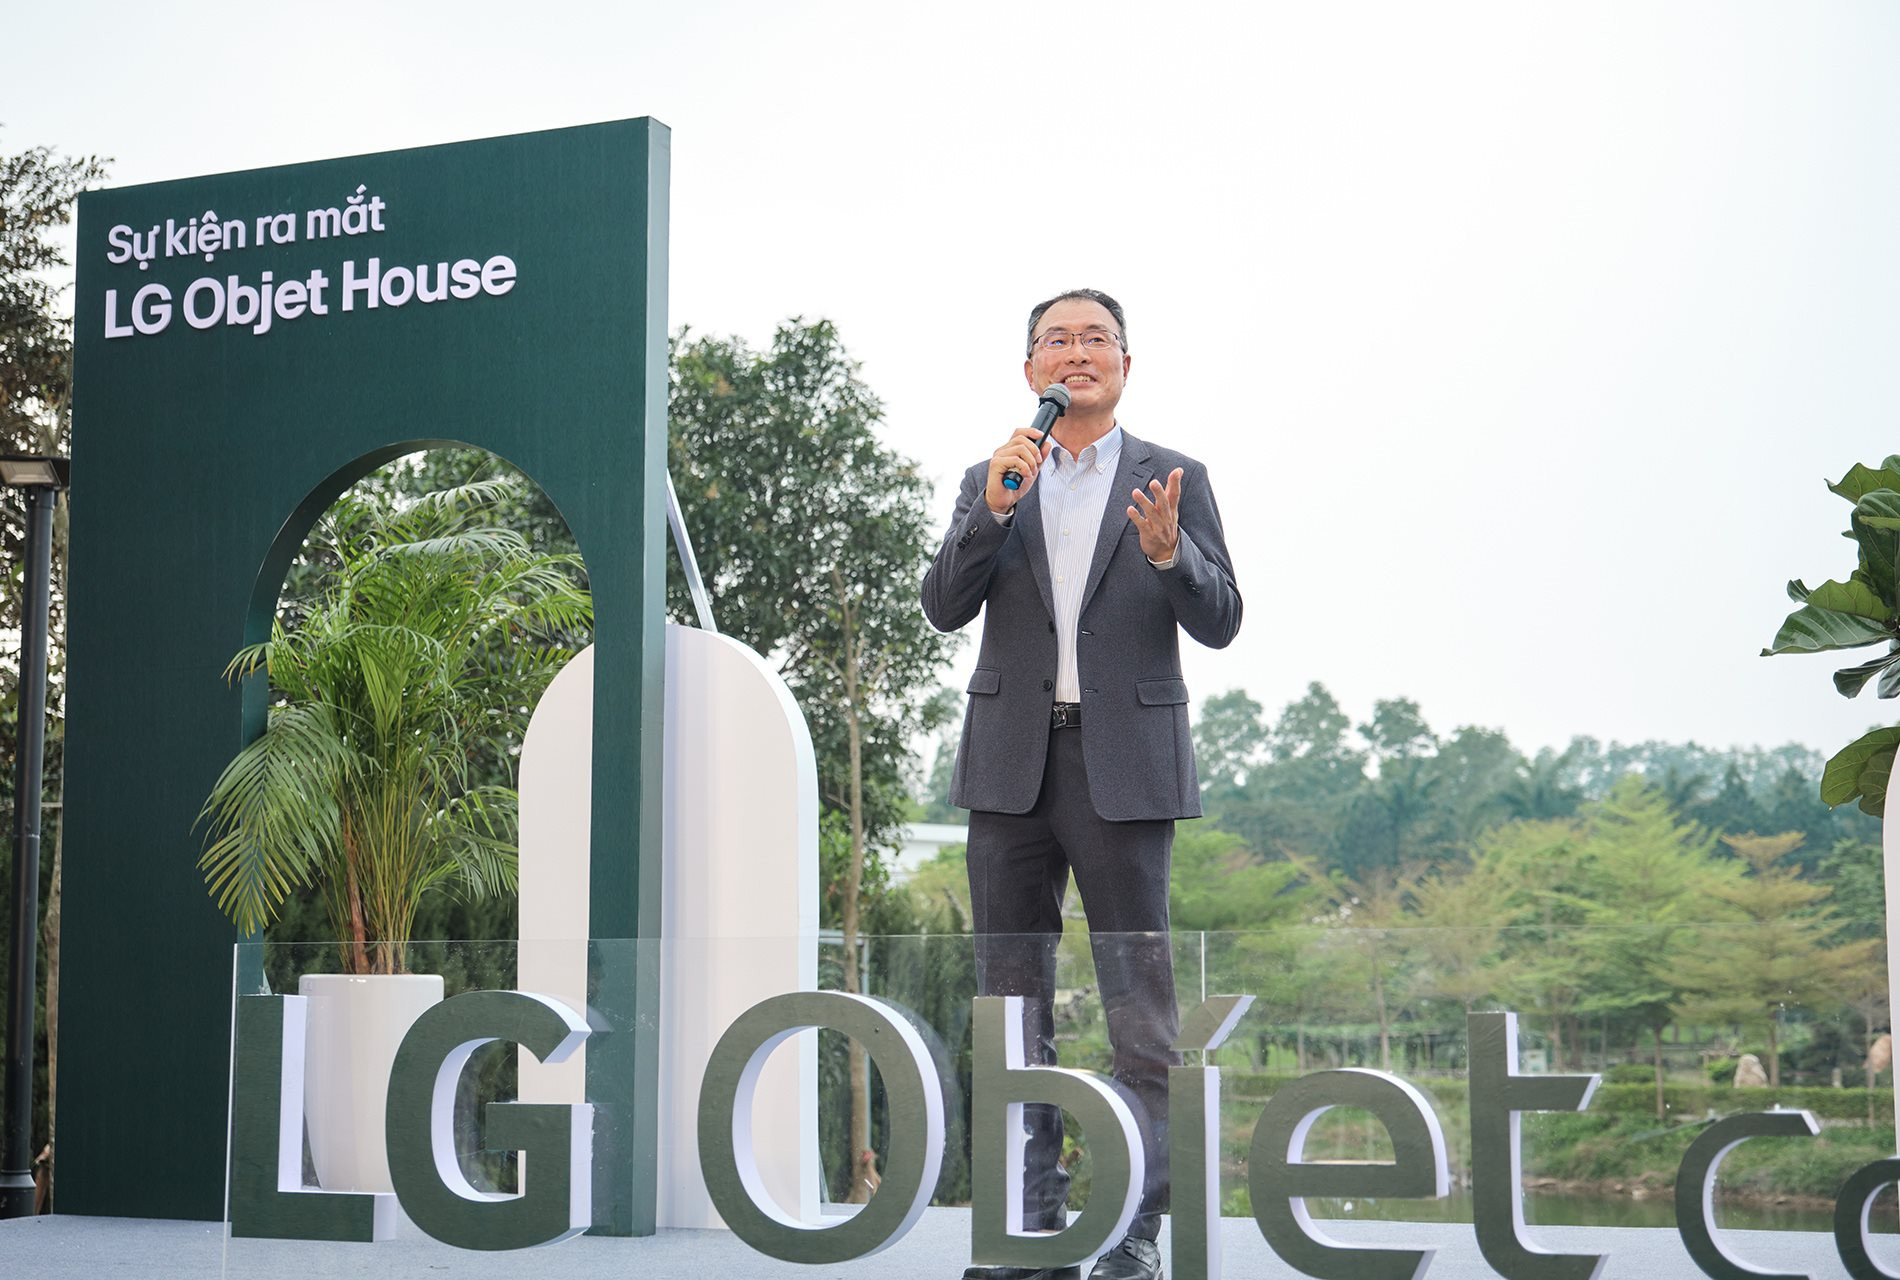 LG đưa bộ sưu tập Objet House ra miền Bắc: Đẹp, thông minh, chuẩn smarthome cho người có tiền- Ảnh 4.